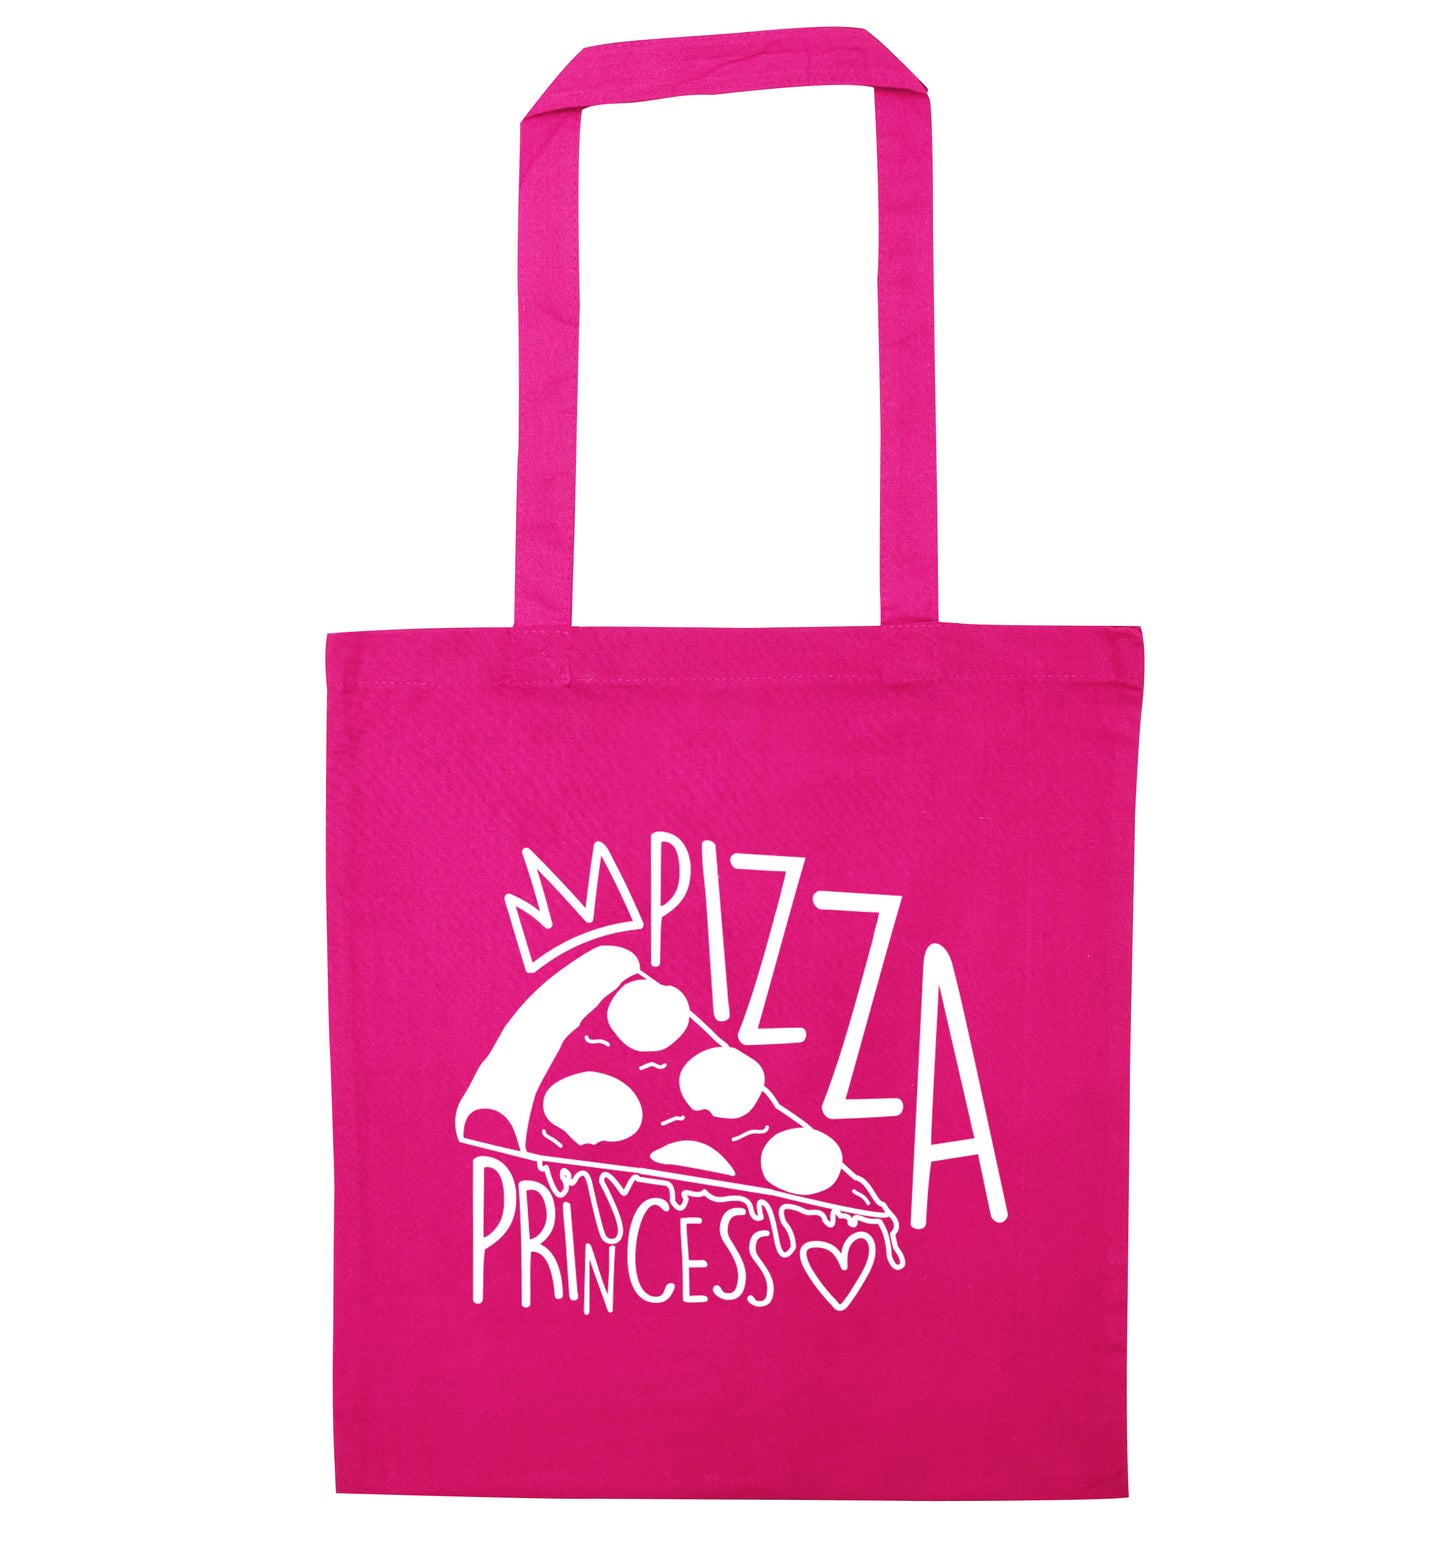 Pizza Princess pink tote bag